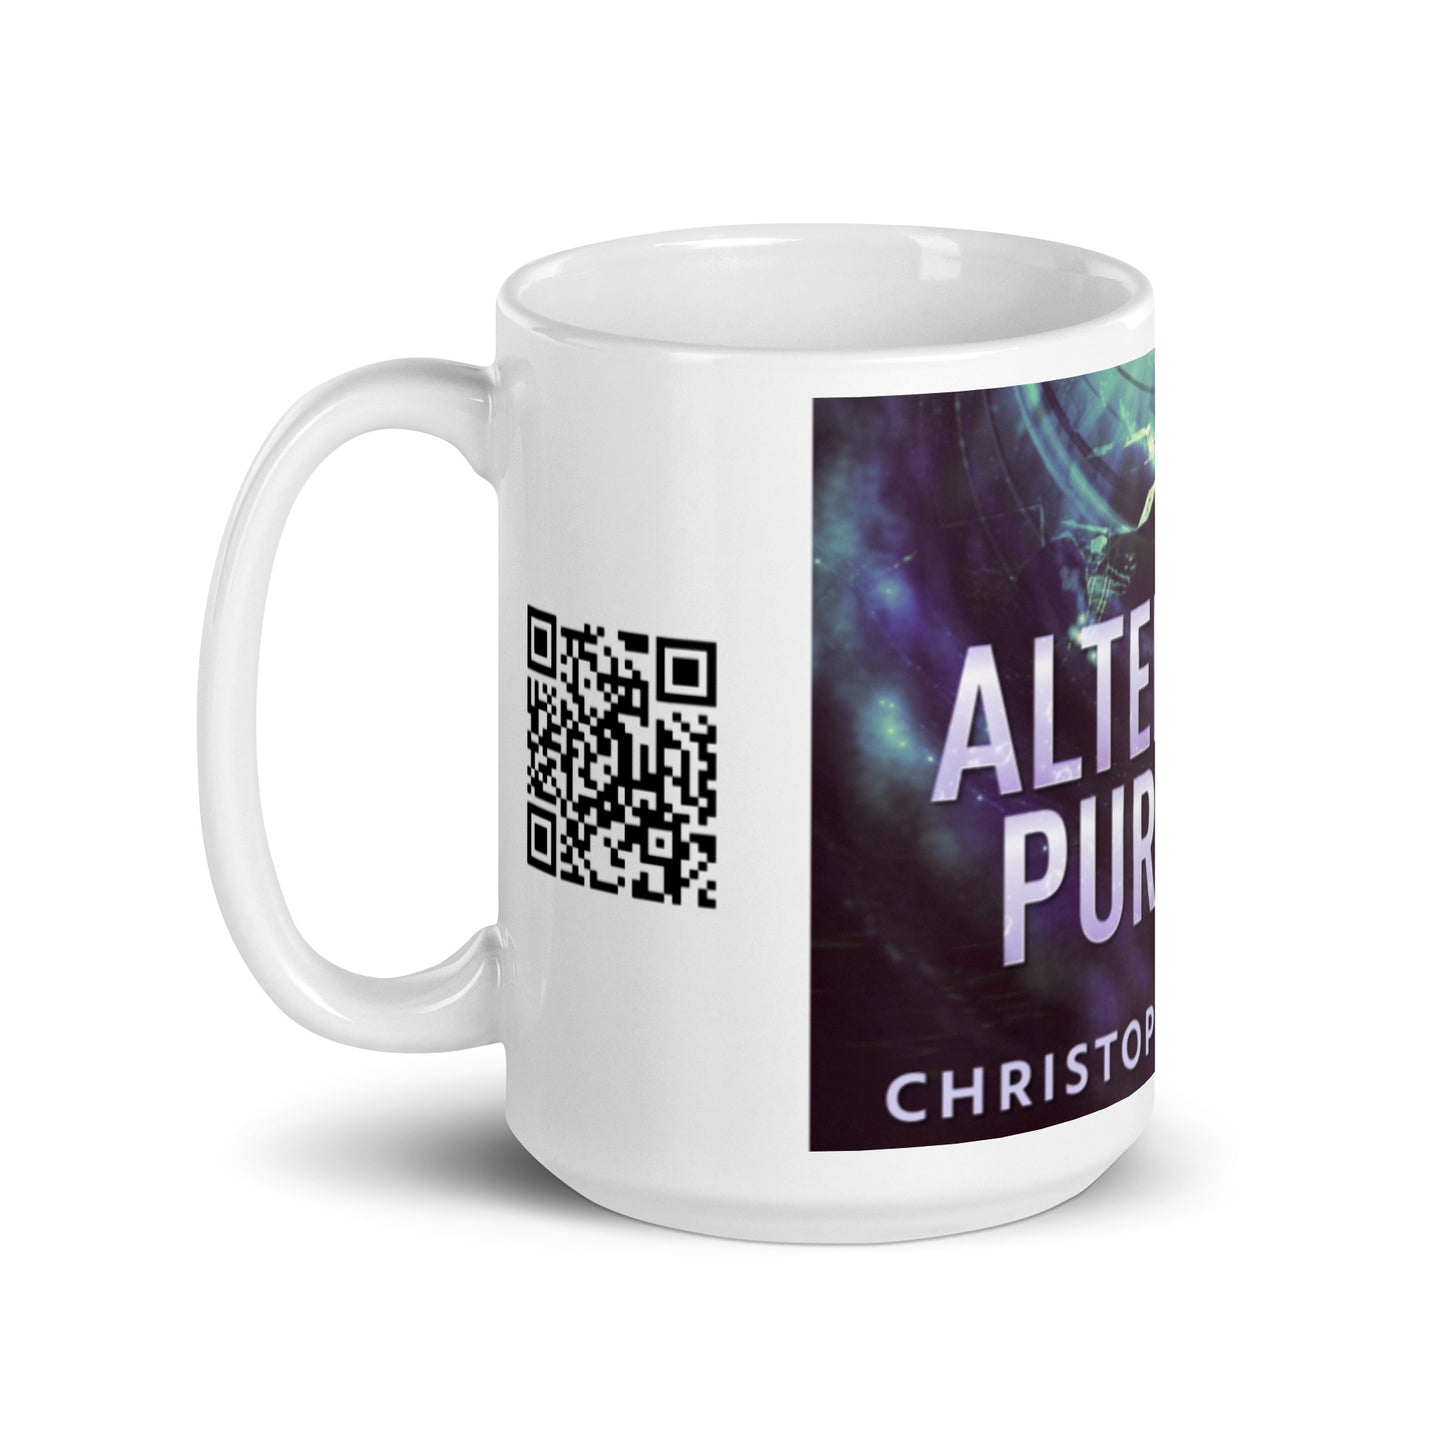 Alternate Purpose - White Coffee Mug